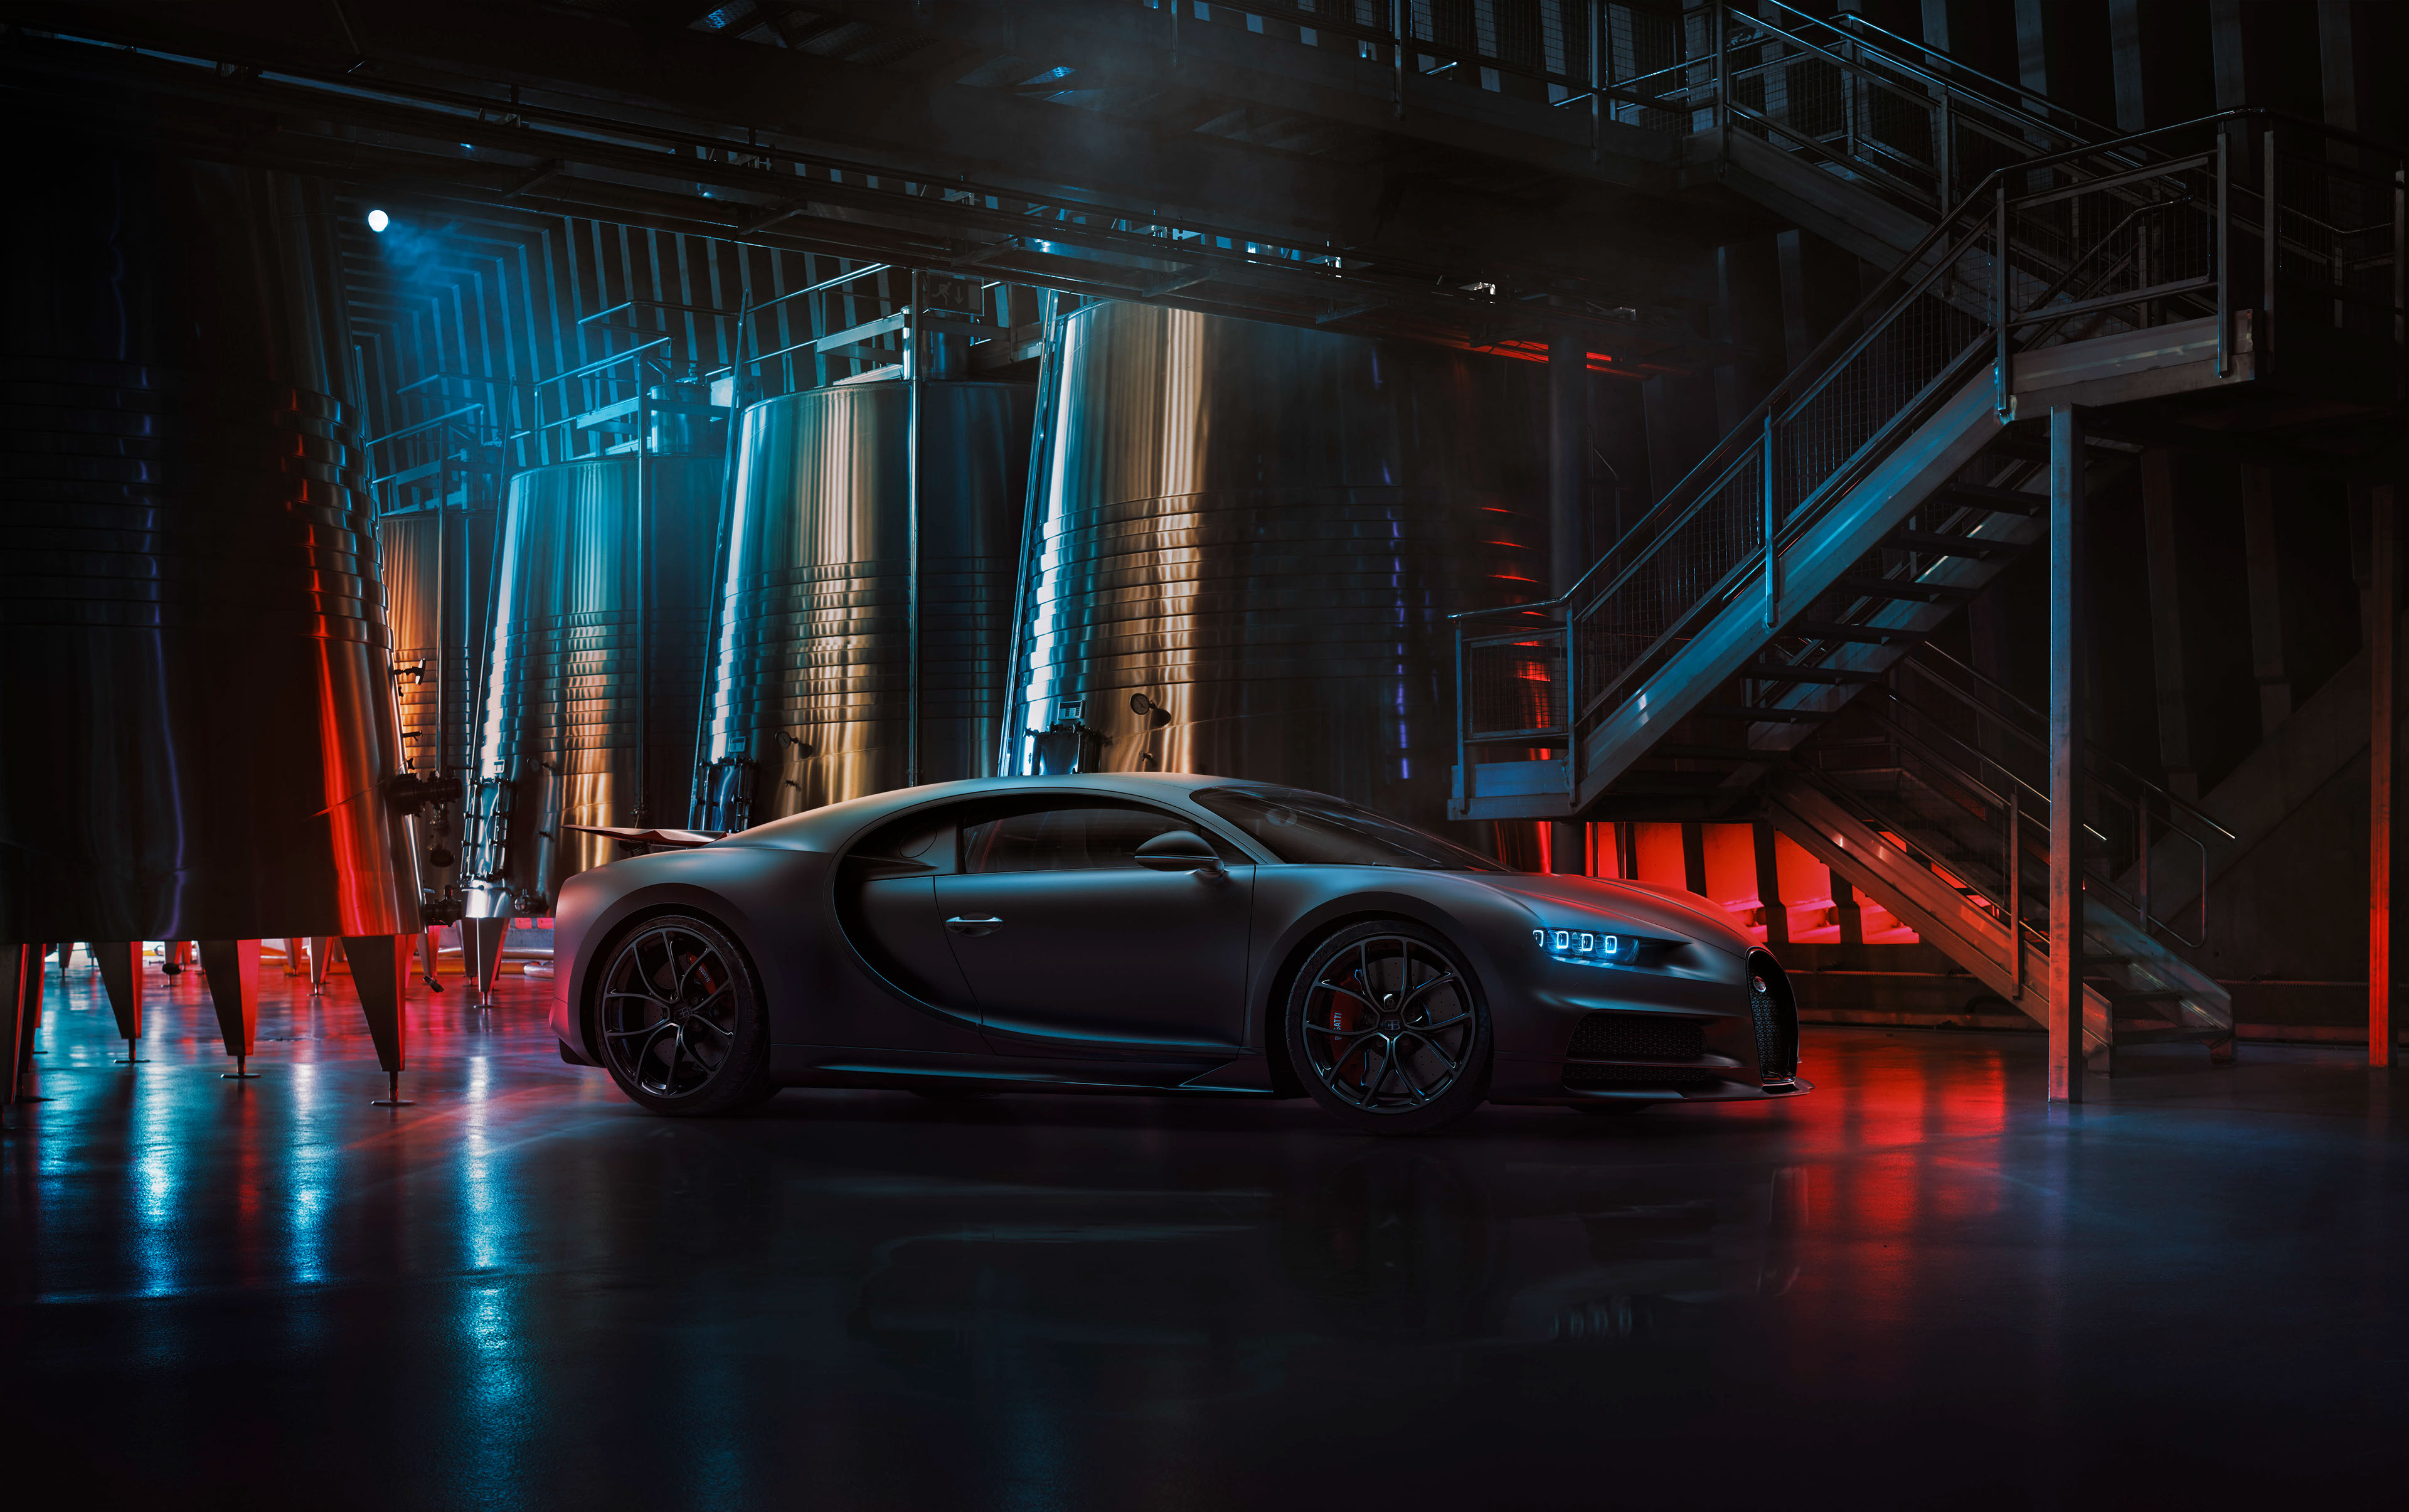 1280x1024 Black Bugatti Chiron 2020 4k 1280x1024 Resolution HD 4k